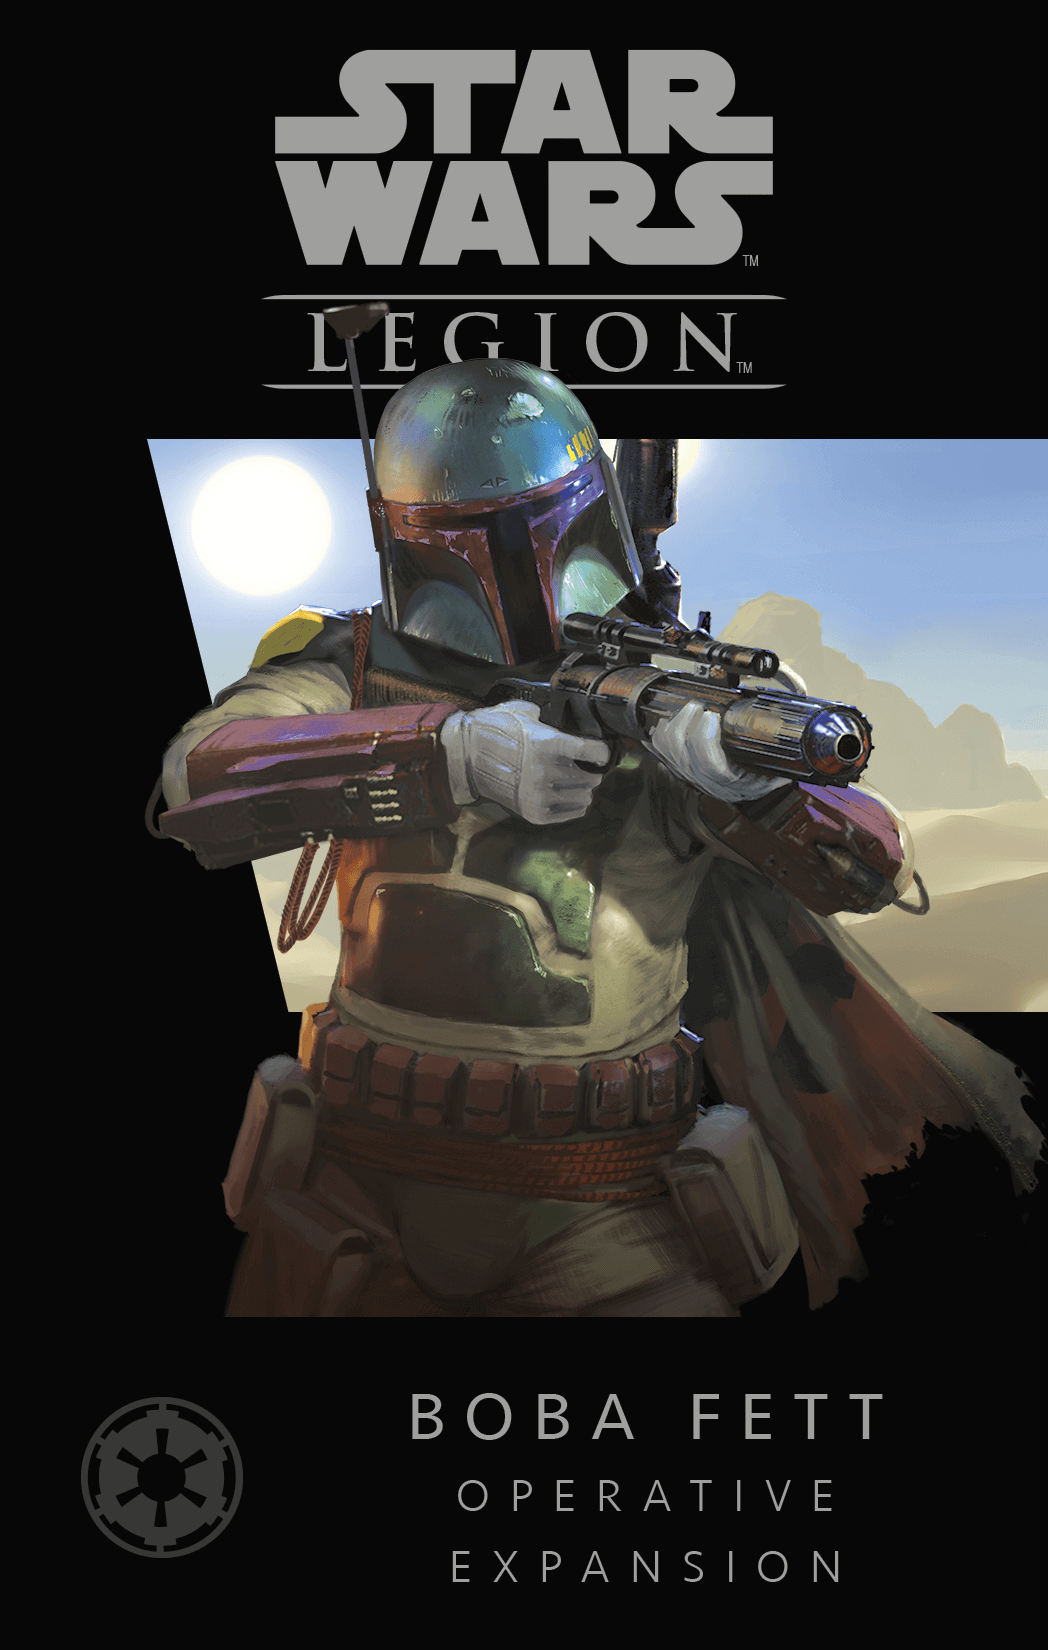 Star Wars: Legion – Boba Fett Operative Expansion